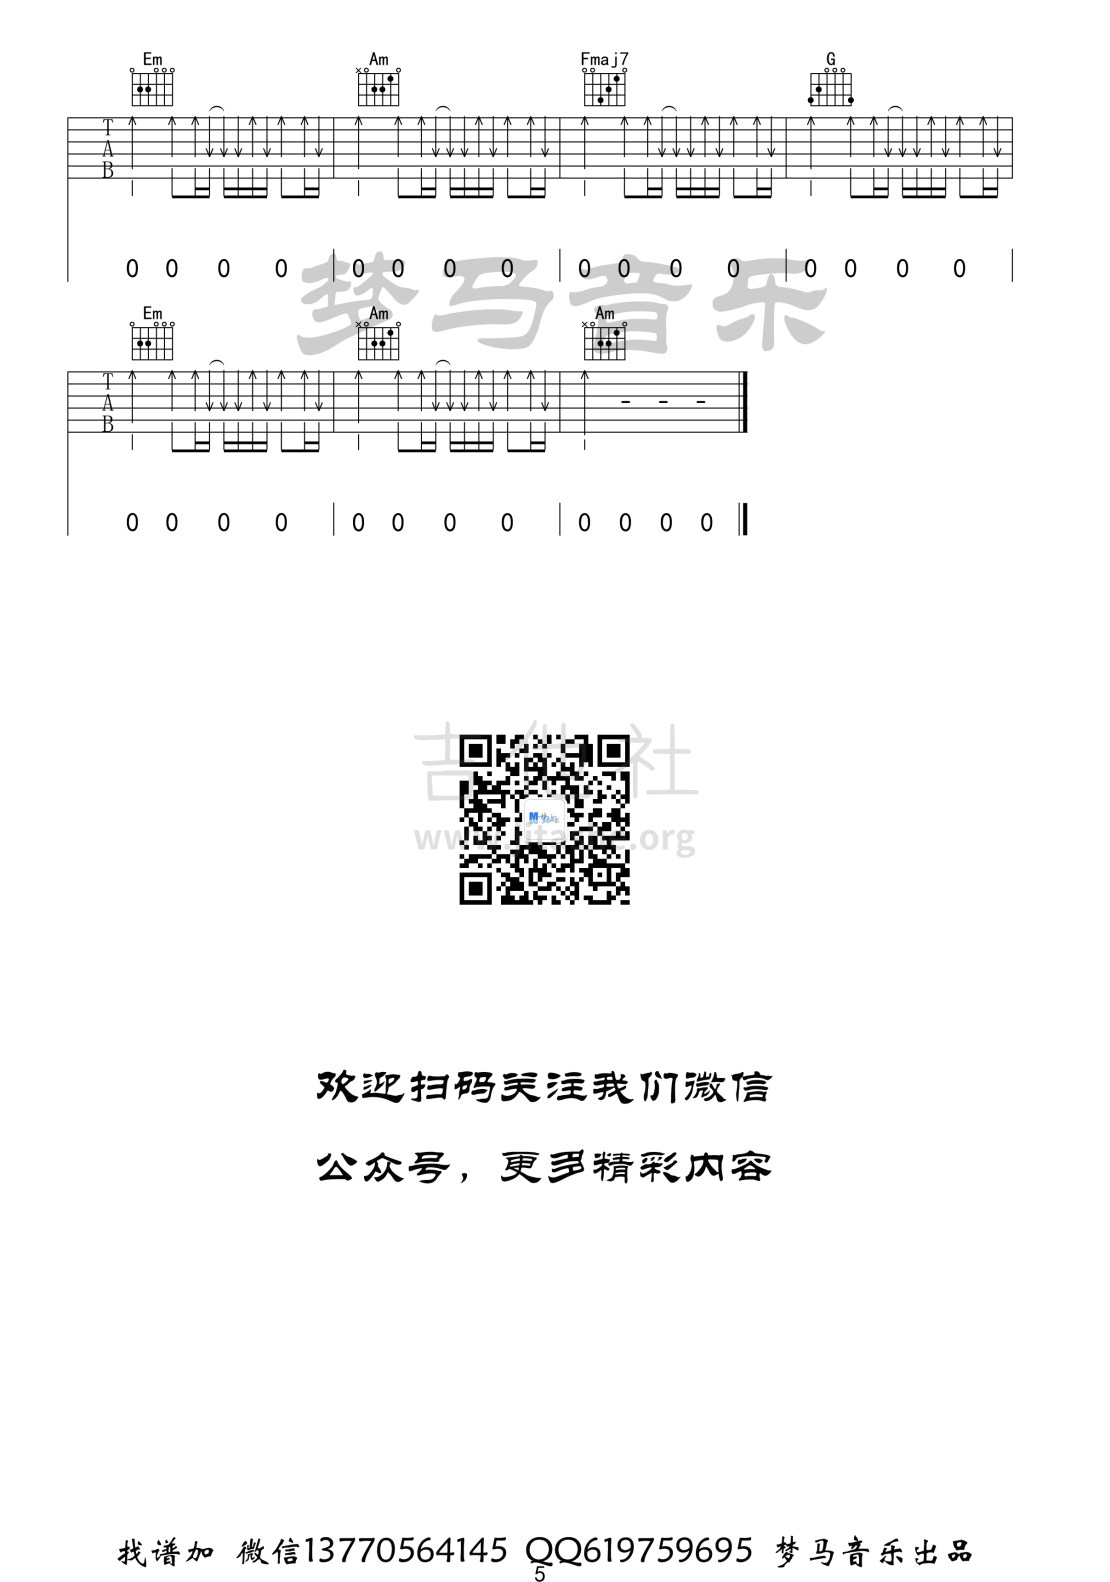 打印:空心吉他谱_光泽_空心-5.jpg